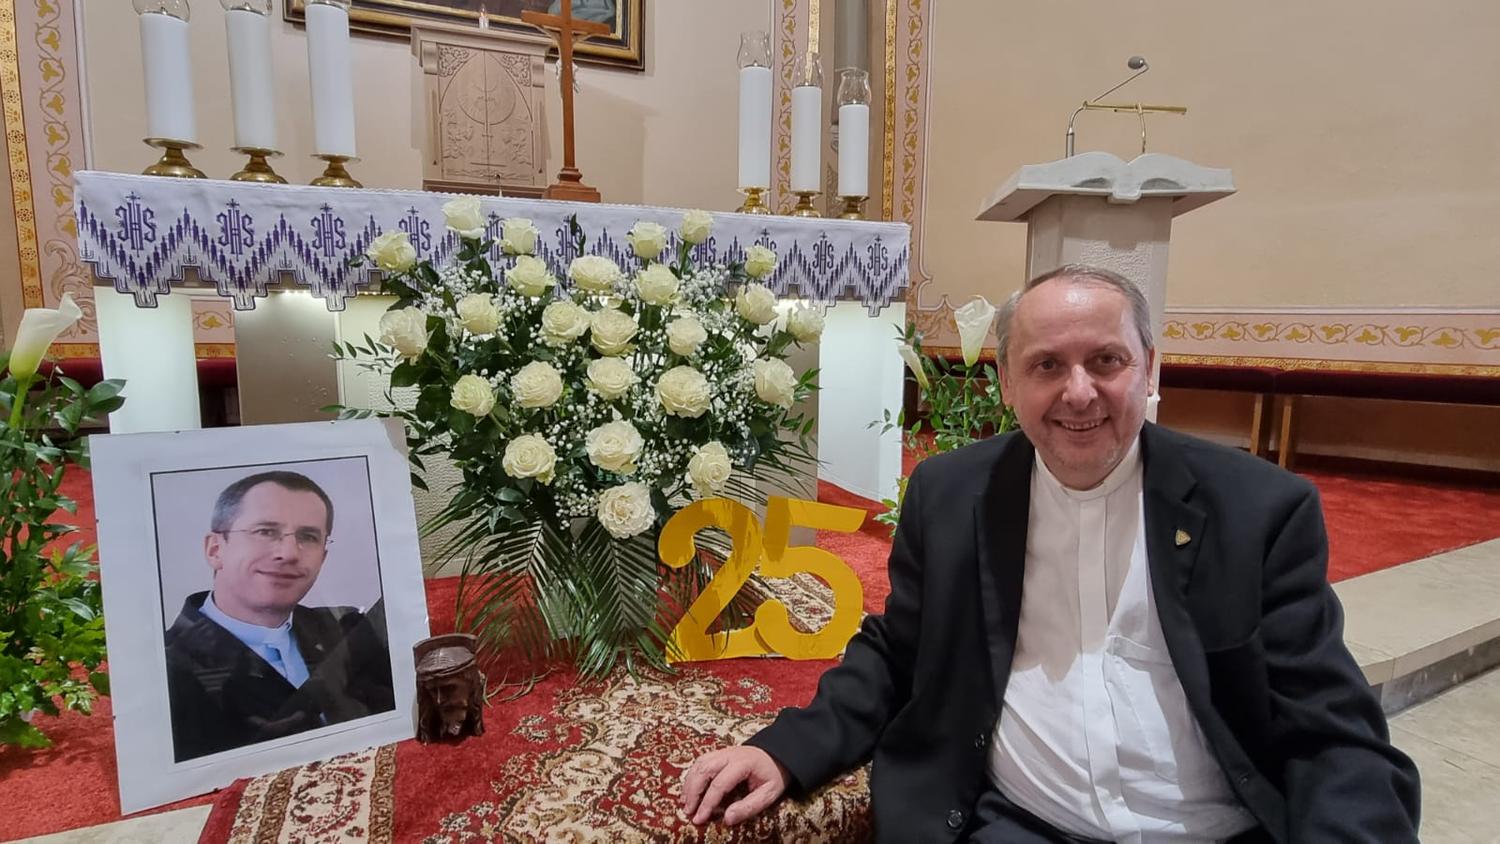 V deň pohrebu otca Jozefa Žvandu: S vrcholom eucharistickej obety prišiel aj vrchol obety jeho života